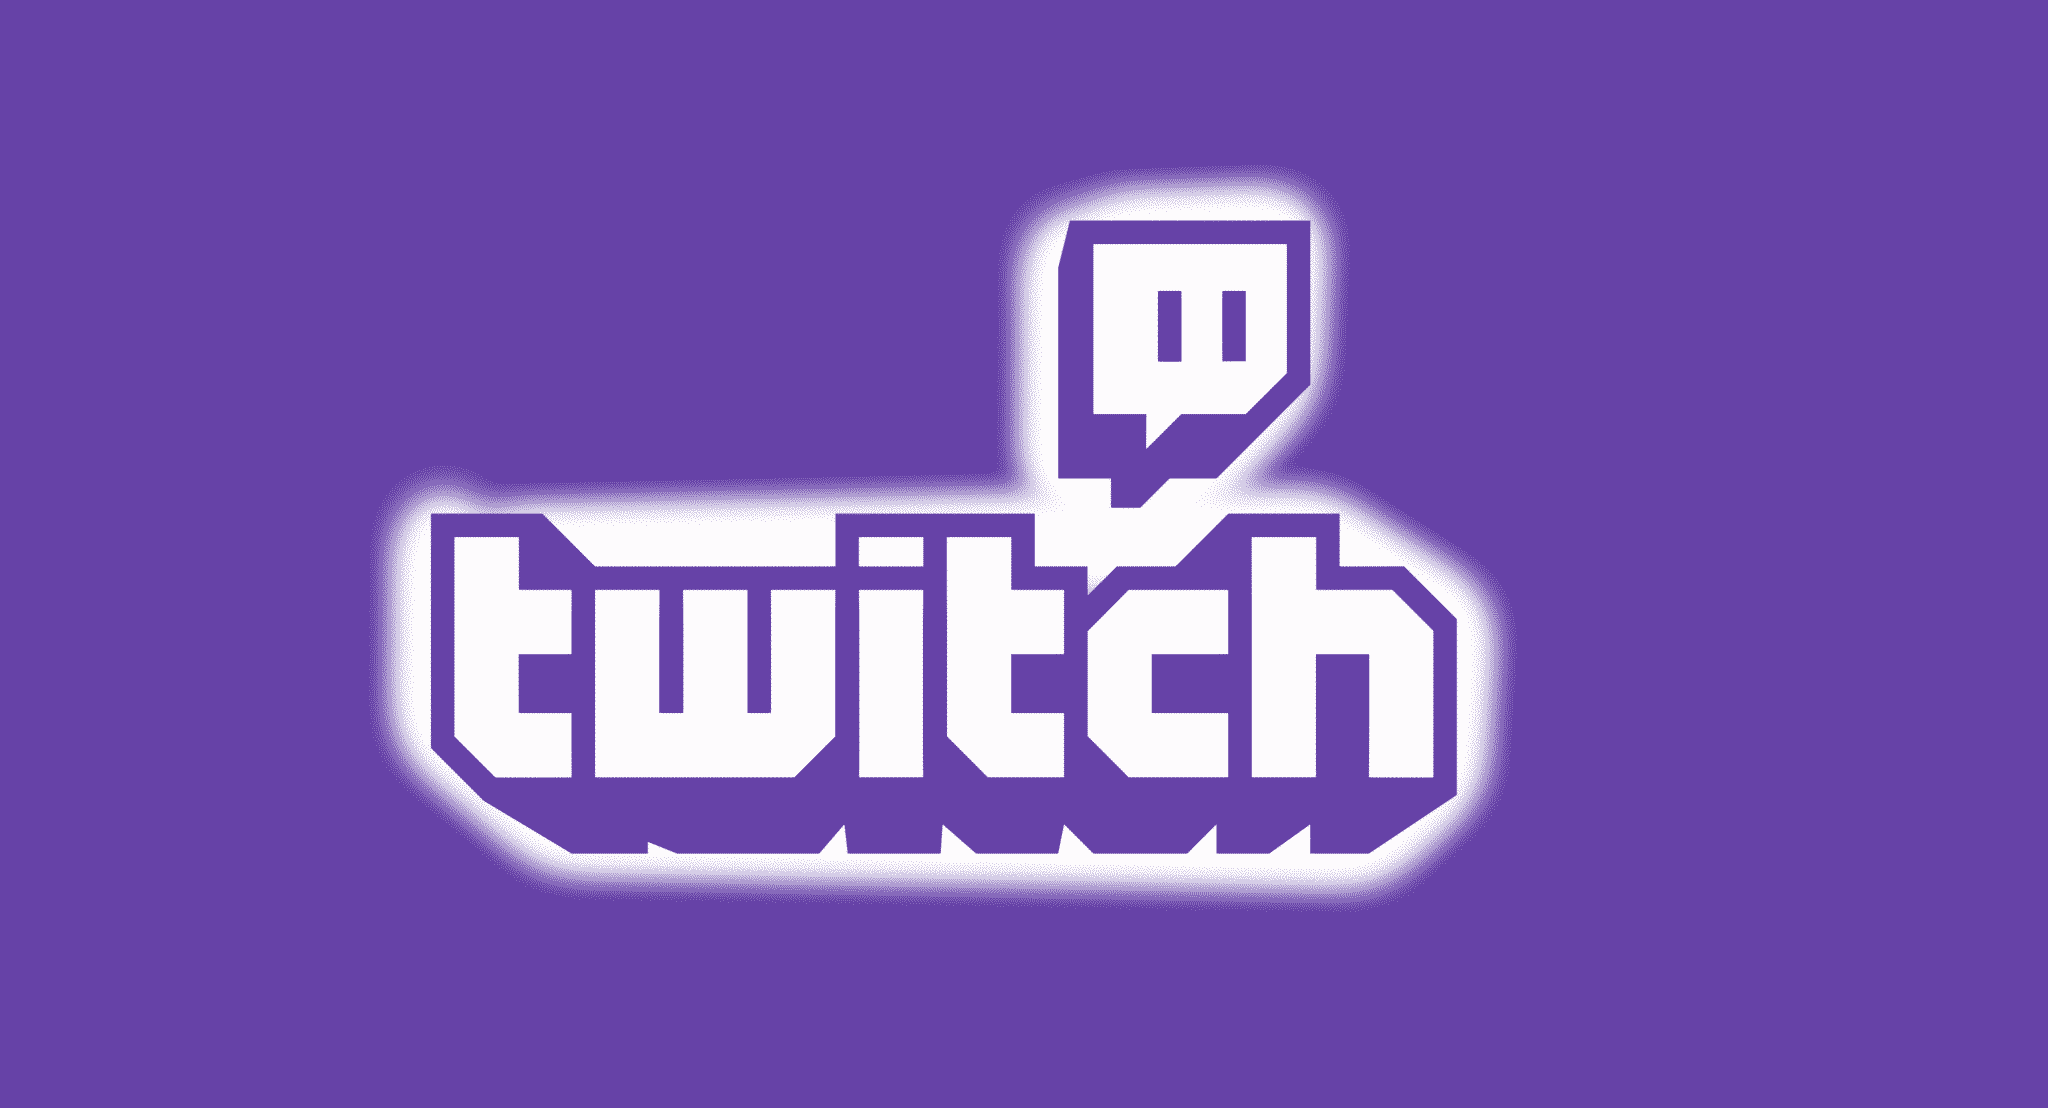 Twitch: saiba como funciona uma das maiores plataformas de streaming | 71a16601 twitch logo | married games dicas/guias | csgo, fortnite, gta, live streaming, streaming, twitch, valorant, warzone | twitch como funciona